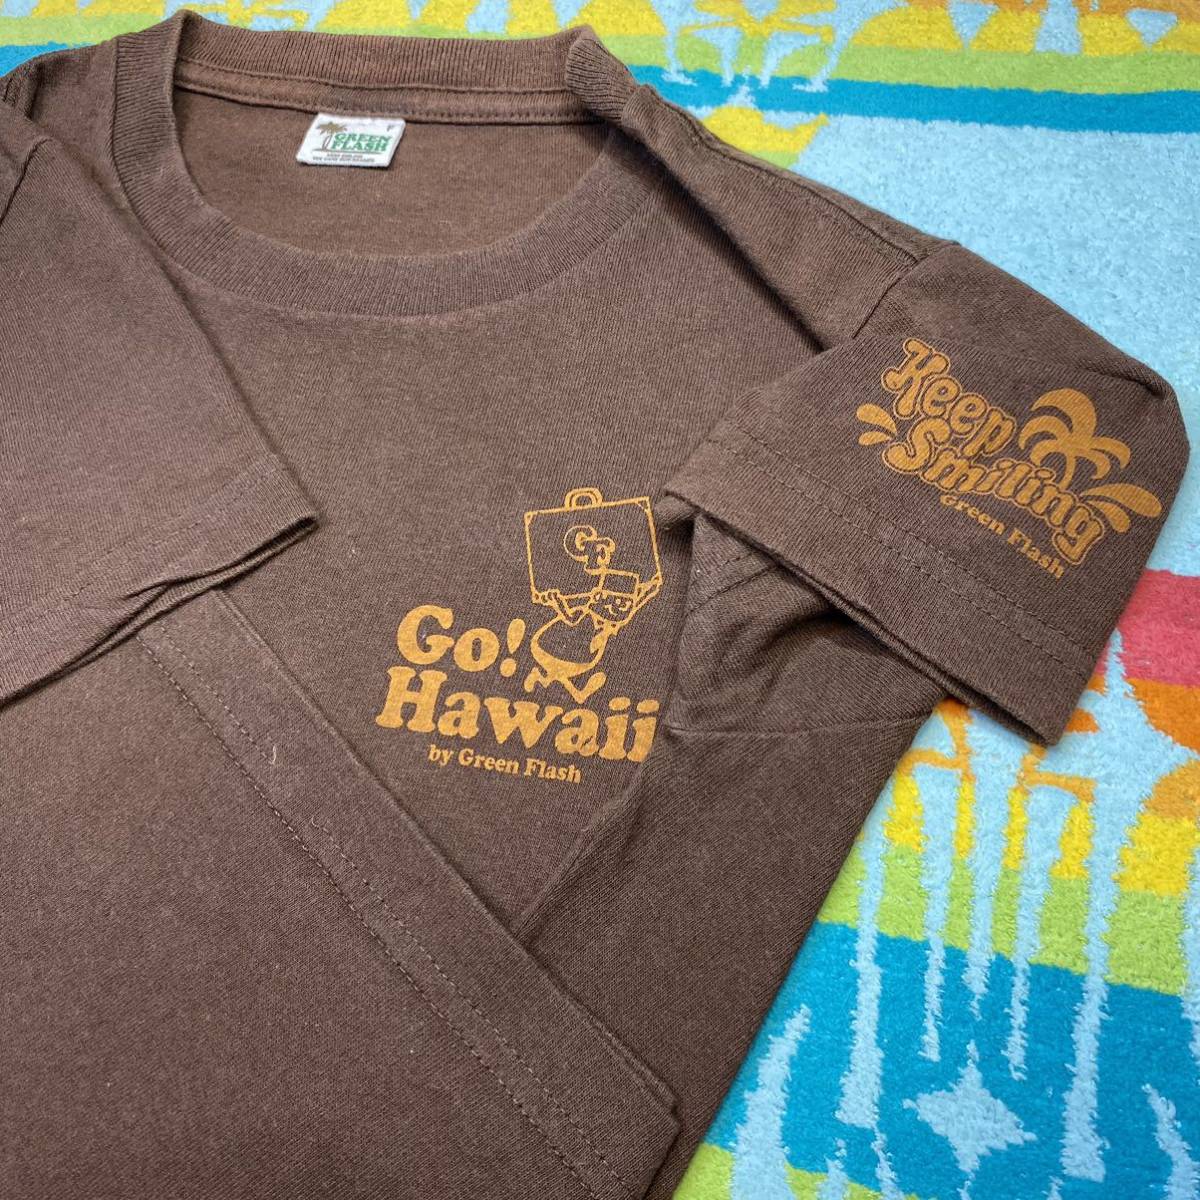 レアHawaii満載!絵柄雰囲気良好!Hawaiian Local Shops Logo Design!GREEN FLASHハワイShopロゴ スーベニア アドバタイジング サーフTシャツ_脇下シミ無綺麗 肩テープ補強 袖裾ダブルS